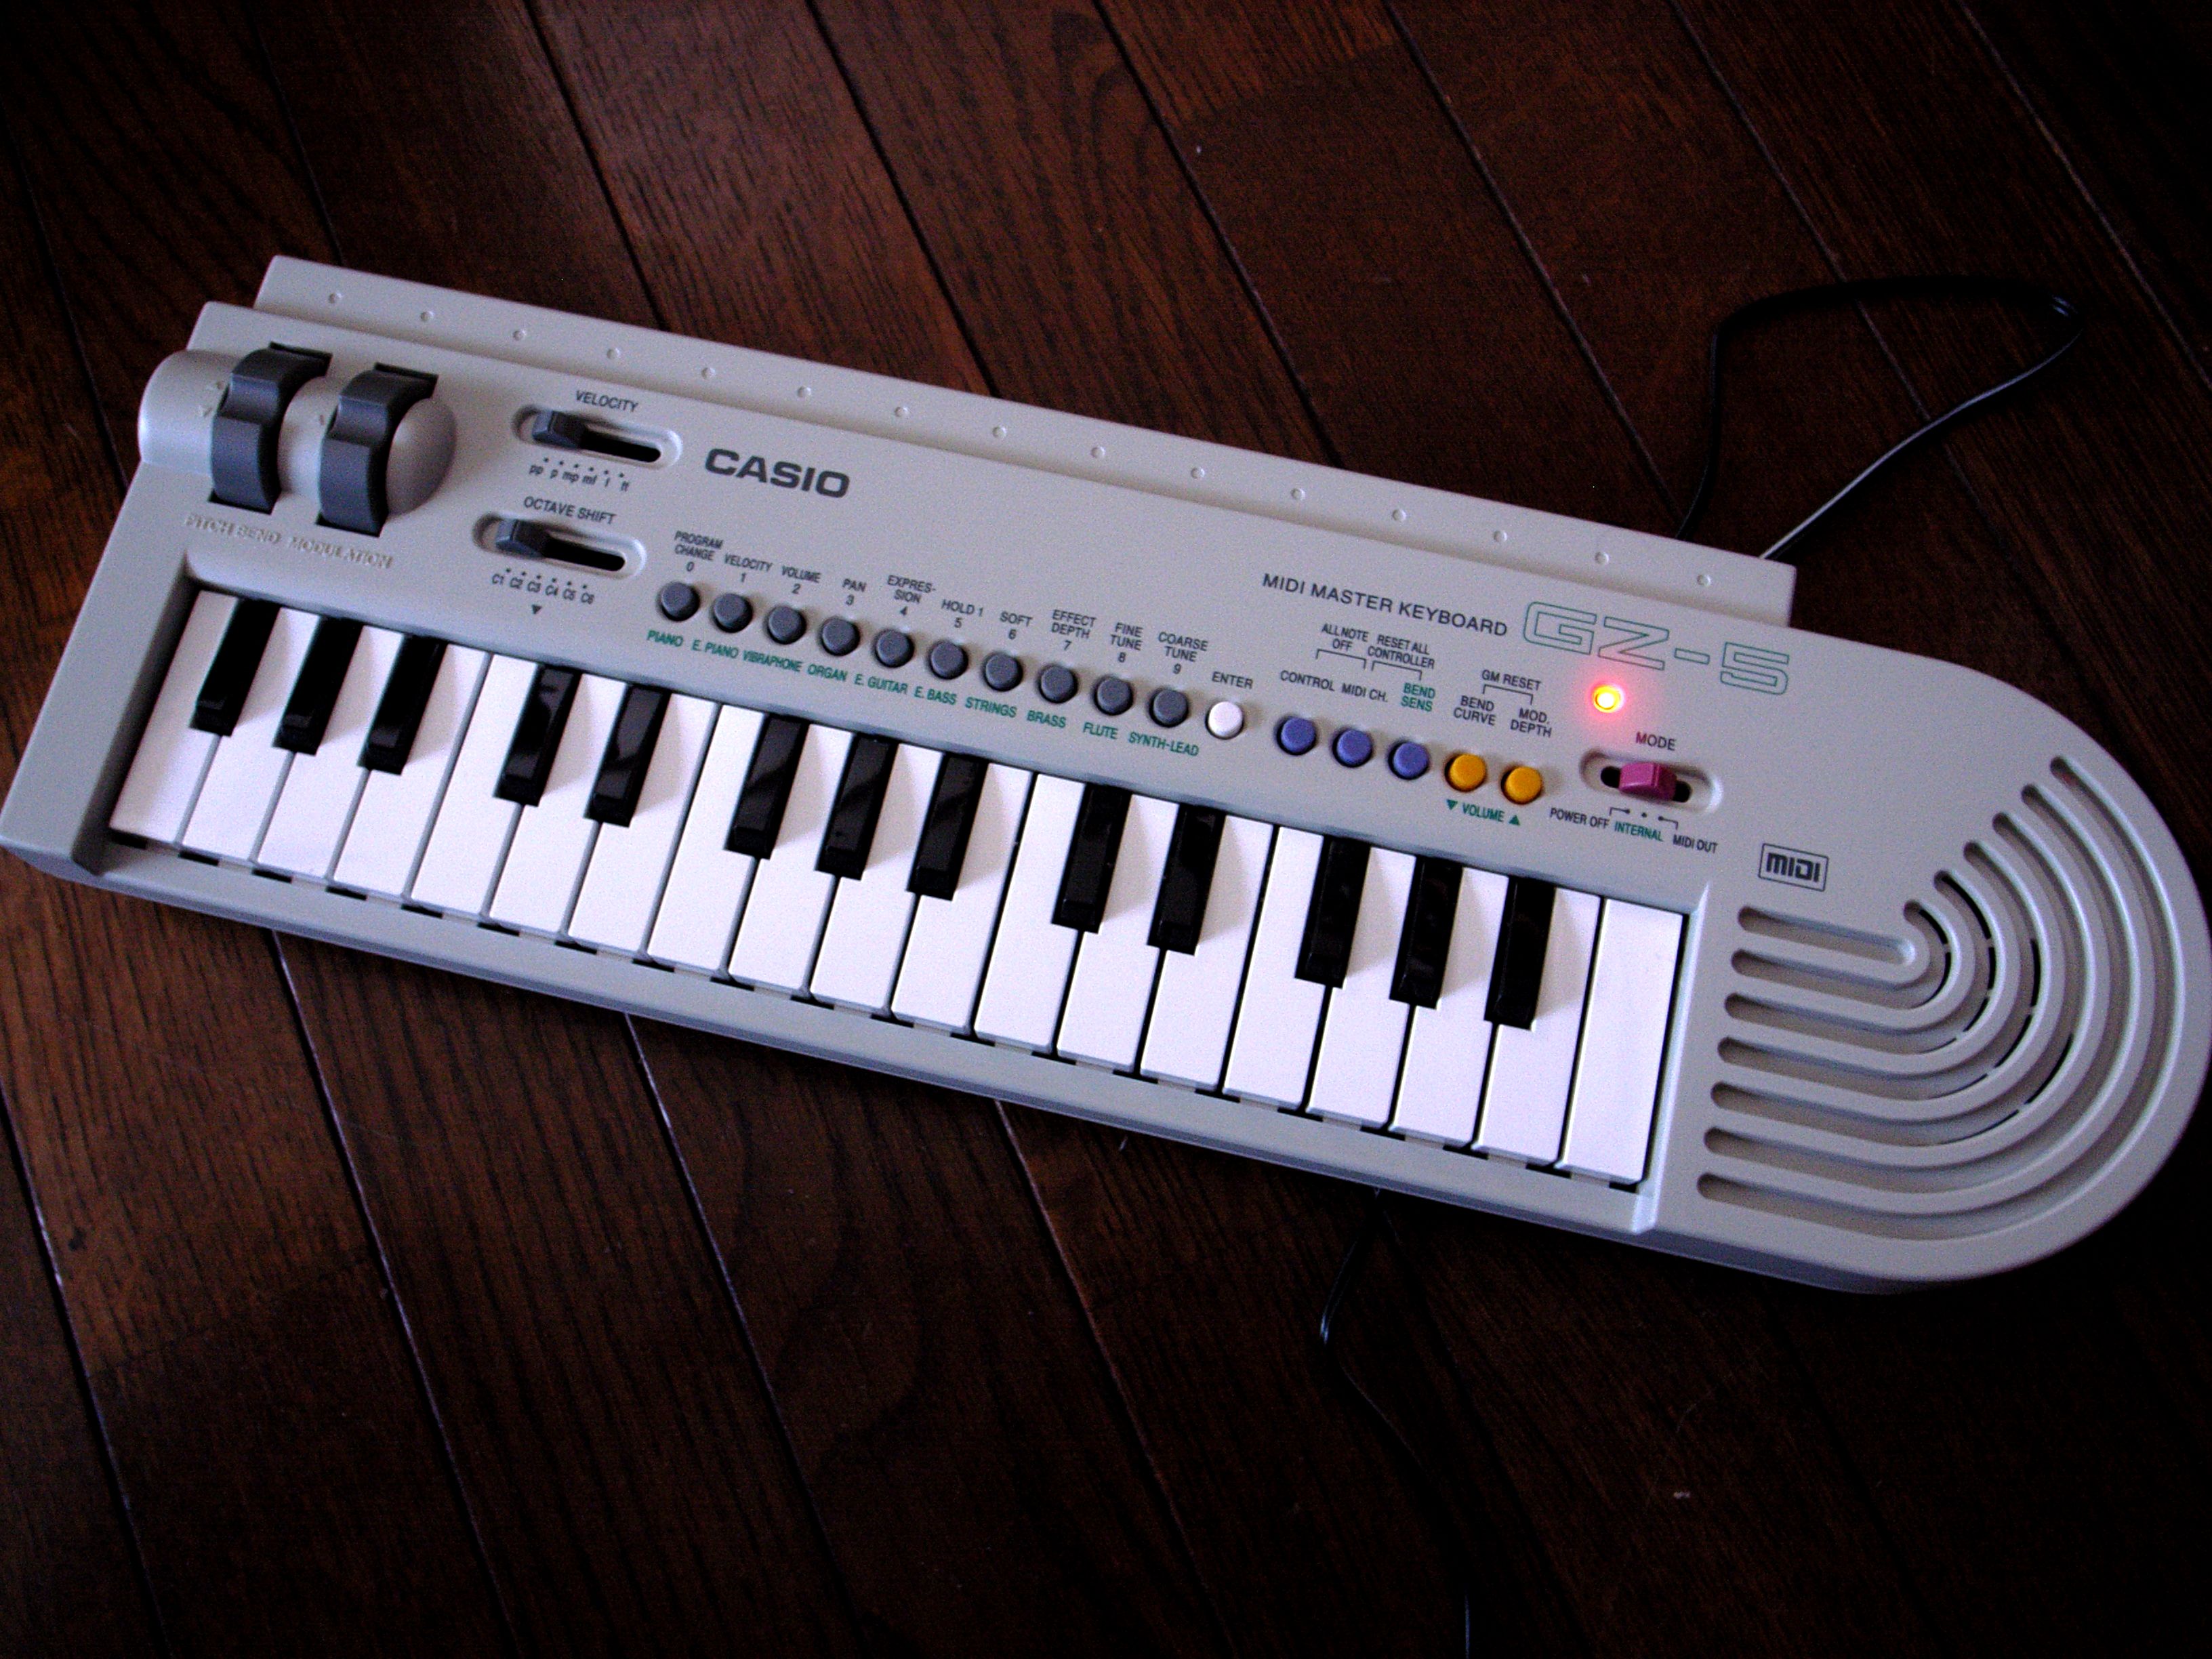 Casio electric piano keyboard